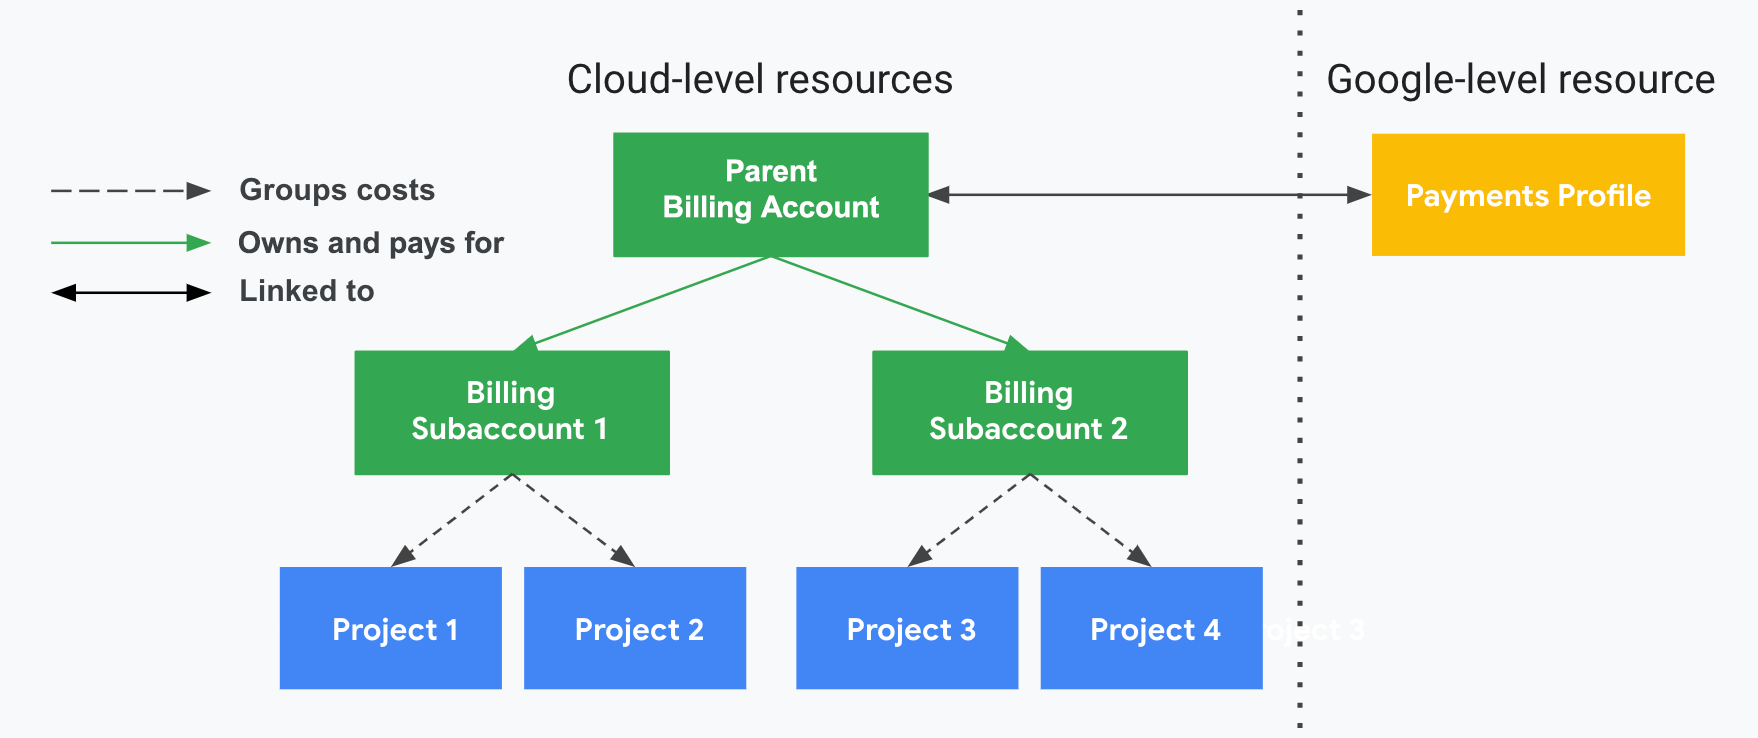 プロジェクトが Cloud 請求先アカウント、Cloud 請求先サブアカウント、Google お支払いプロファイルとどのように関連しているかを示します。縦の破線で区切られた片方には Google Cloud レベルのリソース（Cloud 請求先アカウント、サブアカウント、関連付けられたプロジェクト）が示され、もう片方には Google レベルのリソース（Google お支払いプロファイル）が示されています。プロジェクトの使用コストは、関連する Cloud 請求先サブアカウントでグループ化され、小計されます。サブアカウントの費用は、販売パートナーの親の Cloud 請求先アカウントによって支払われます（このアカウントは販売パートナーの Google お支払いプロファイルにリンクされています）。